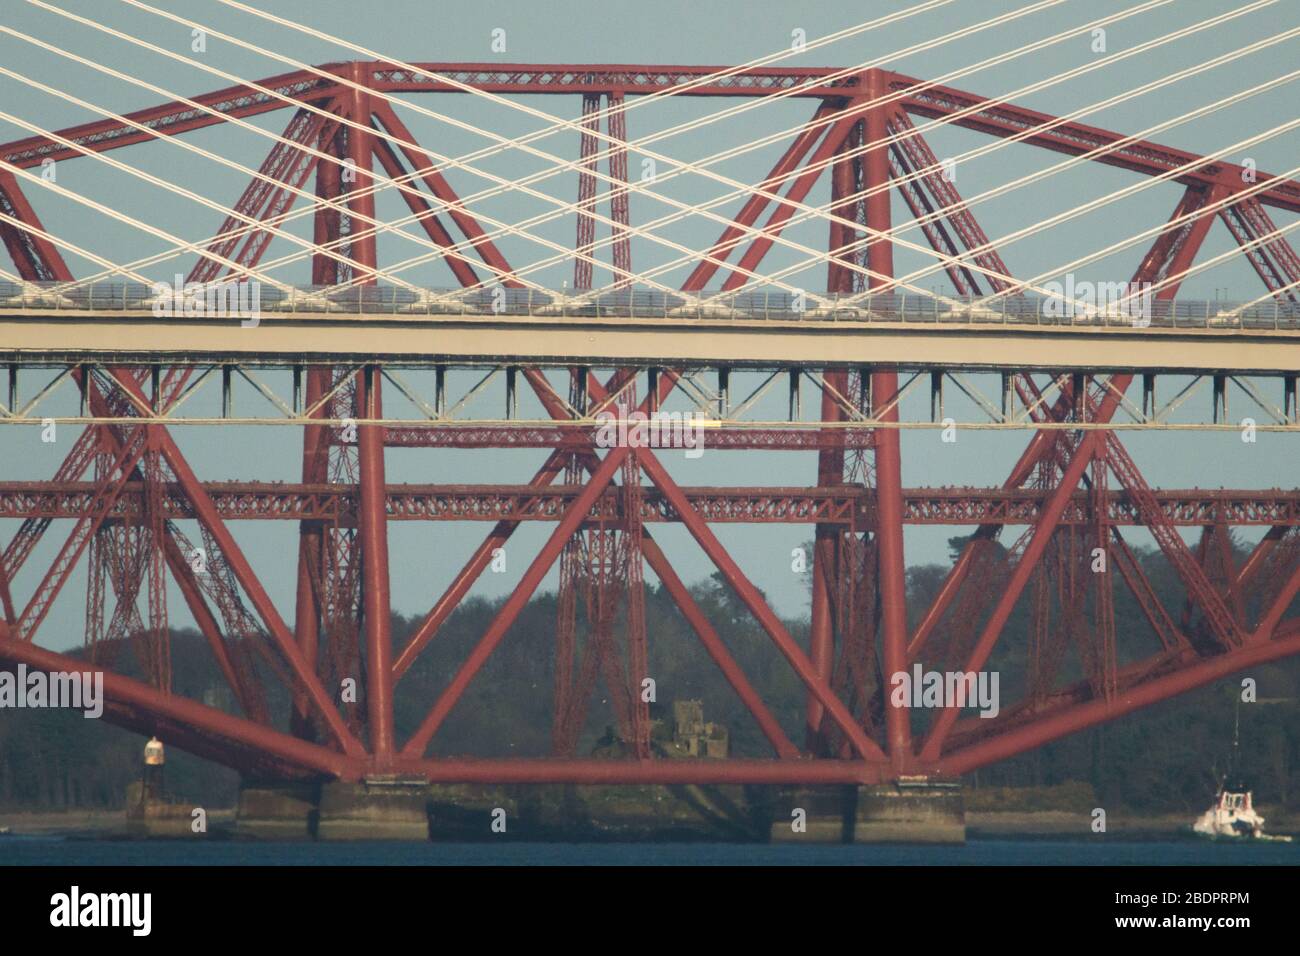 Grangemouth, Großbritannien. April 2020. Im Bild: Die Queensferry Crossing - Schottlands neueste Brücke und die 3rd Firth of Forth Crossing, die Fife und Lothian verbindet die M90 Motorway ist die 1.7 längste, mit drei Türmen verkabelte Brücke der Welt und auch die mit Abstand größte, die Kabel über die mittlere Spannweite führt. Dieses innovative Design bietet zusätzliche Festigkeit und Steifigkeit, wodurch die Türme und das Deck schlanker und eleganter werden. Quelle: Colin Fisher/Alamy Live News. Stockfoto